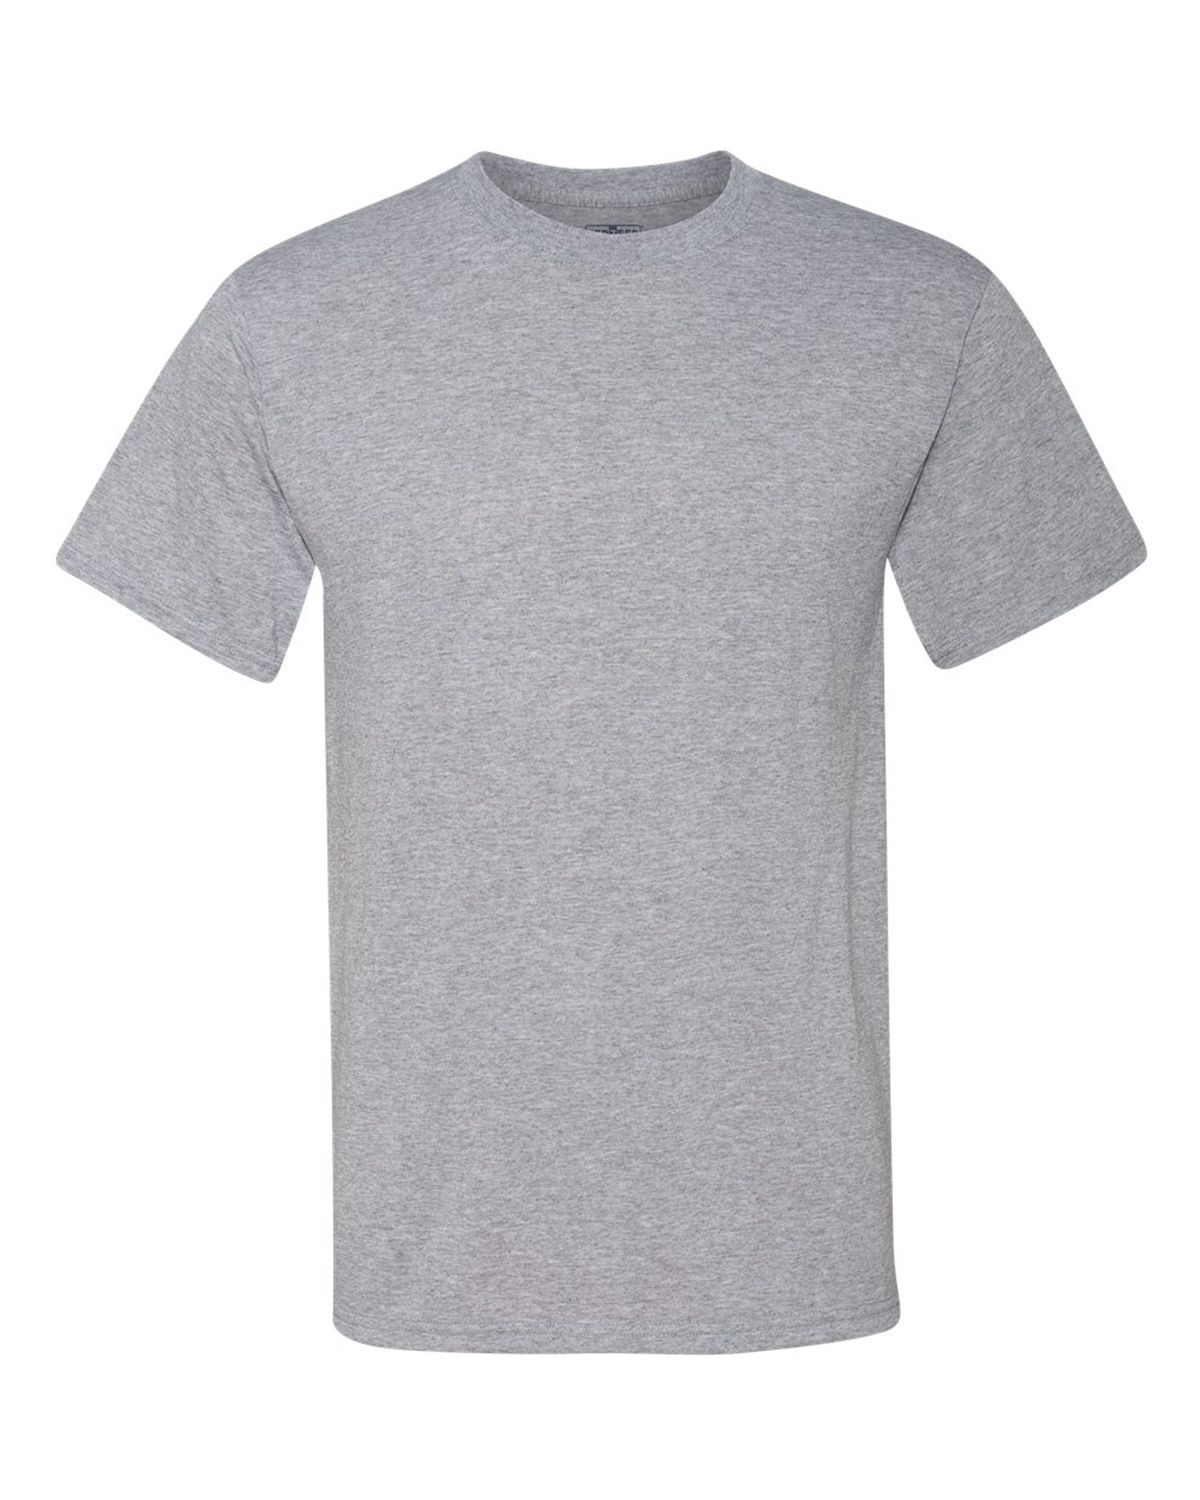 Size Chart for Jerzees 21MR Dri-Power Sport Short Sleeve T-Shirt